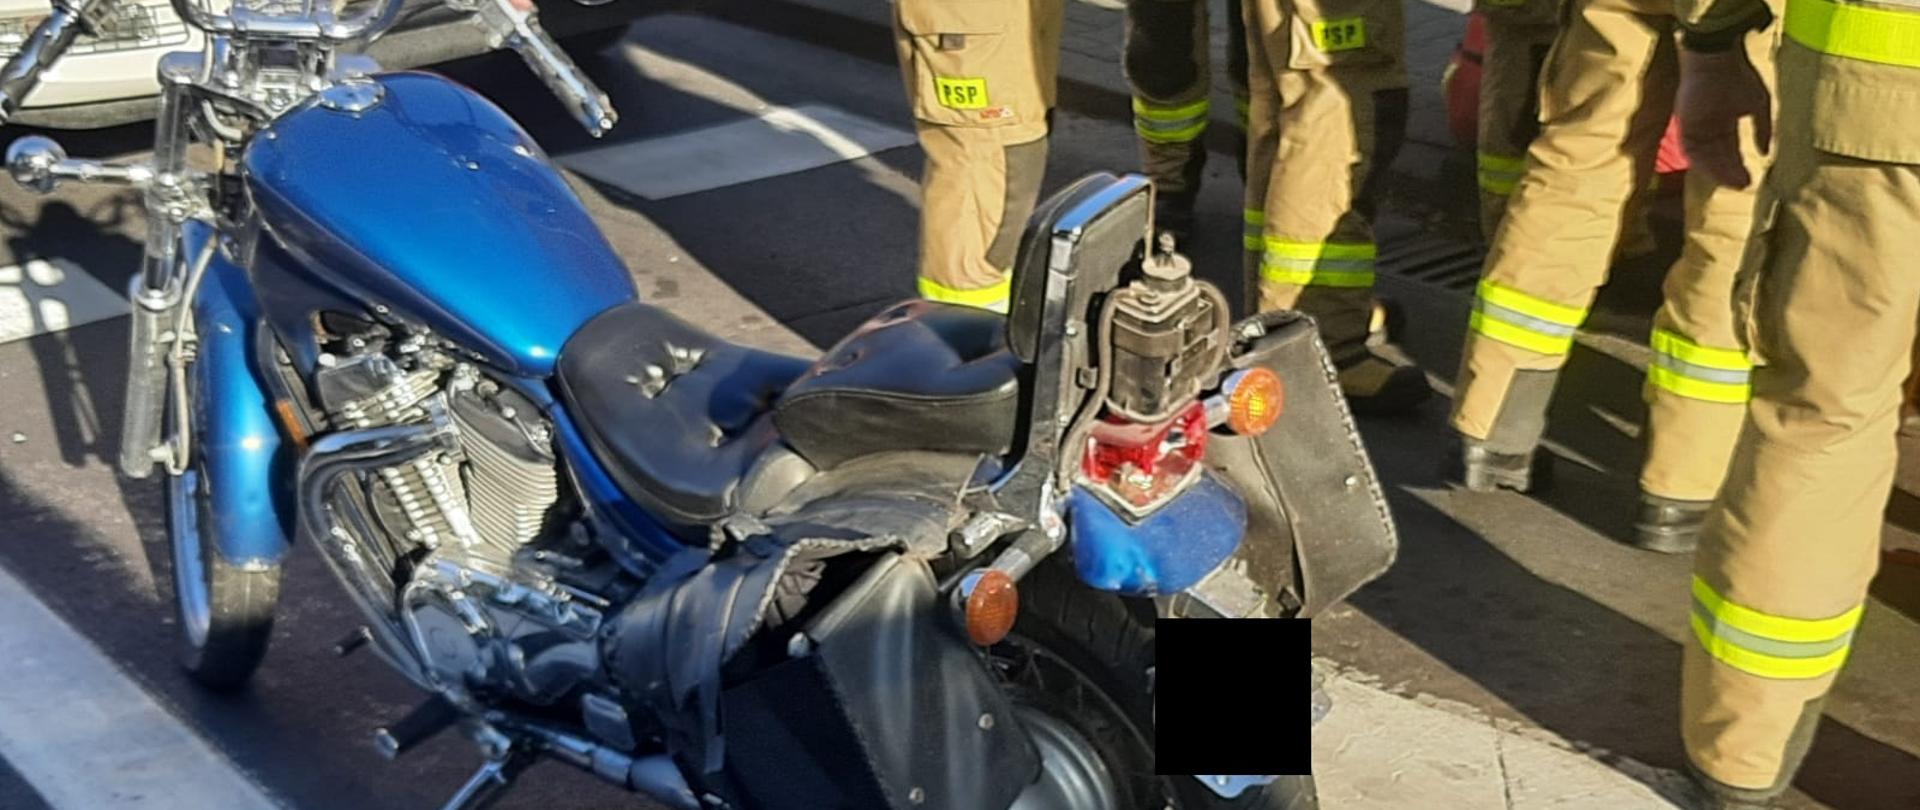 Widać uszkodzony tył motocykla